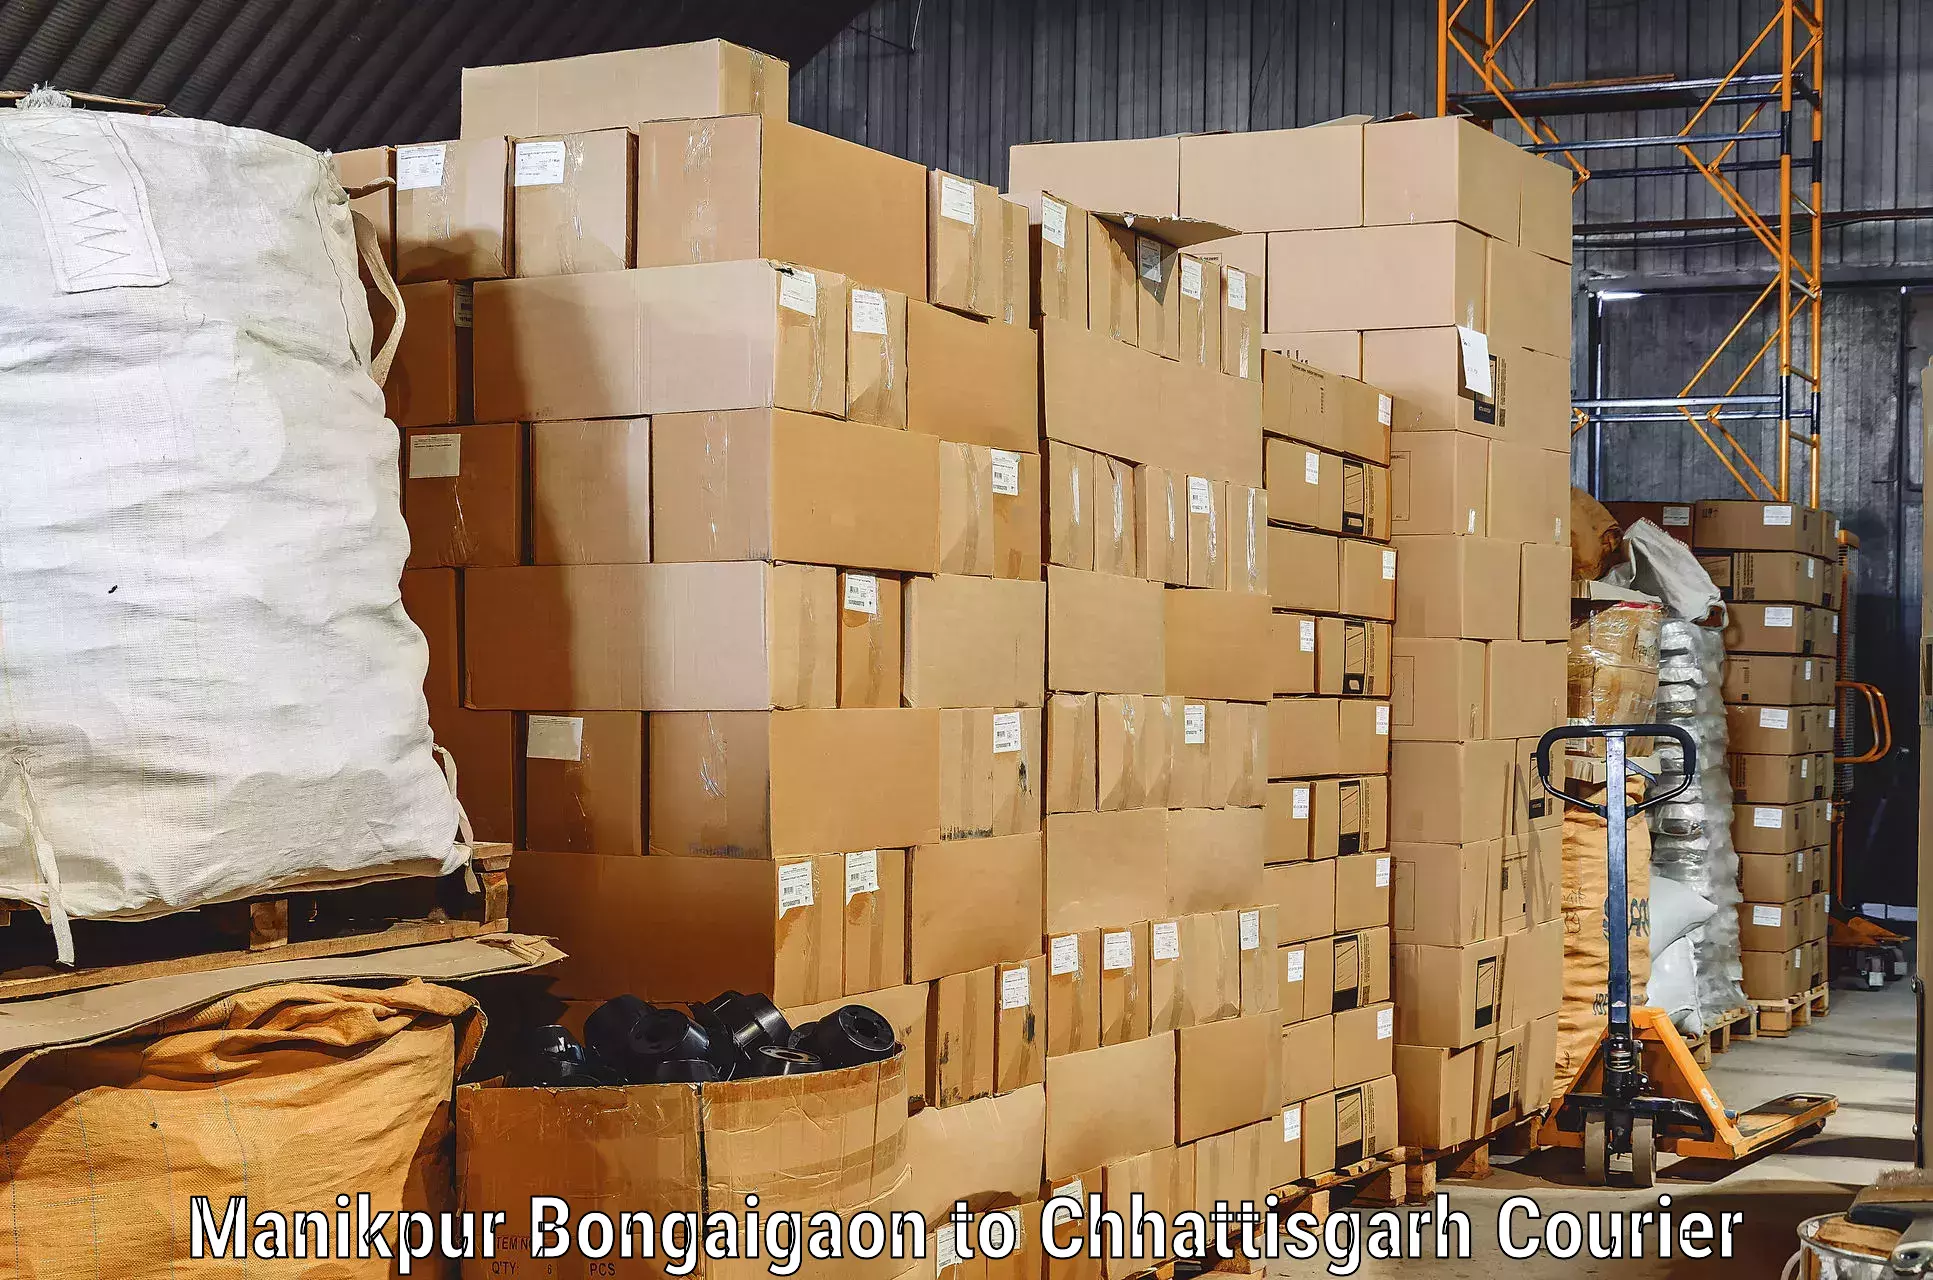 Professional furniture transport in Manikpur Bongaigaon to Mahasamund